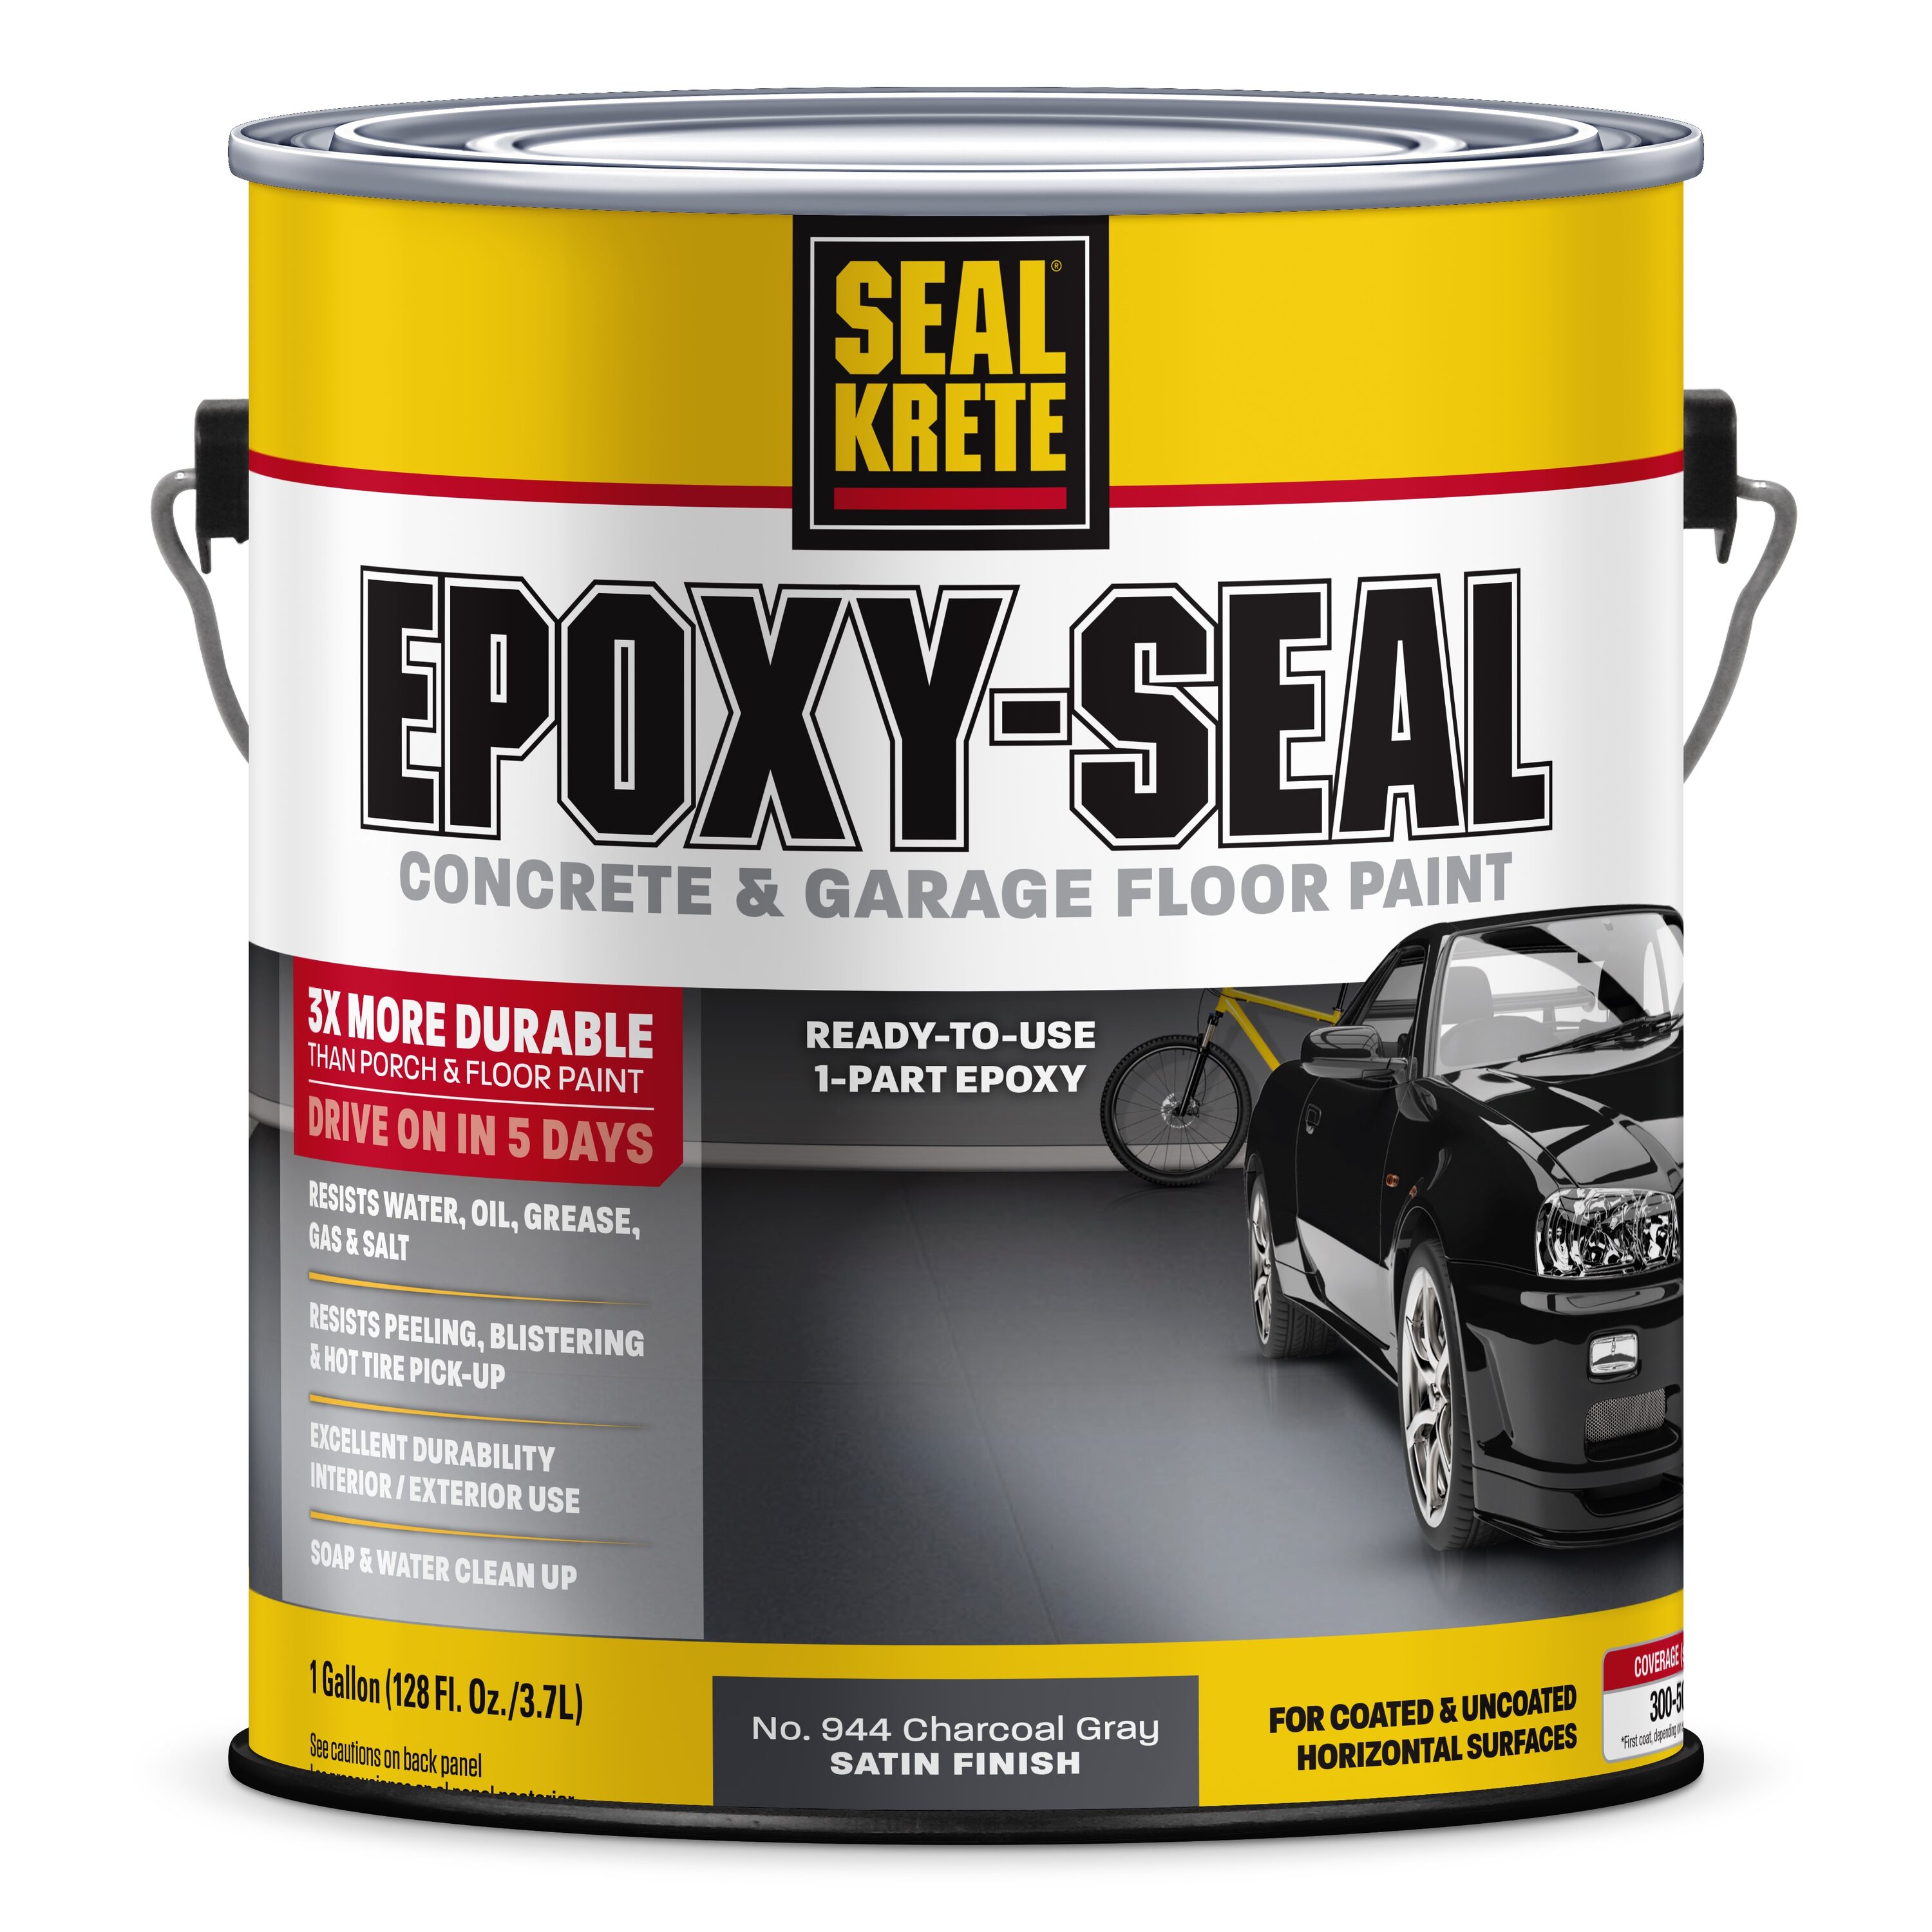 Clear Epoxy Coat 154 - Excellent concrete primer for various